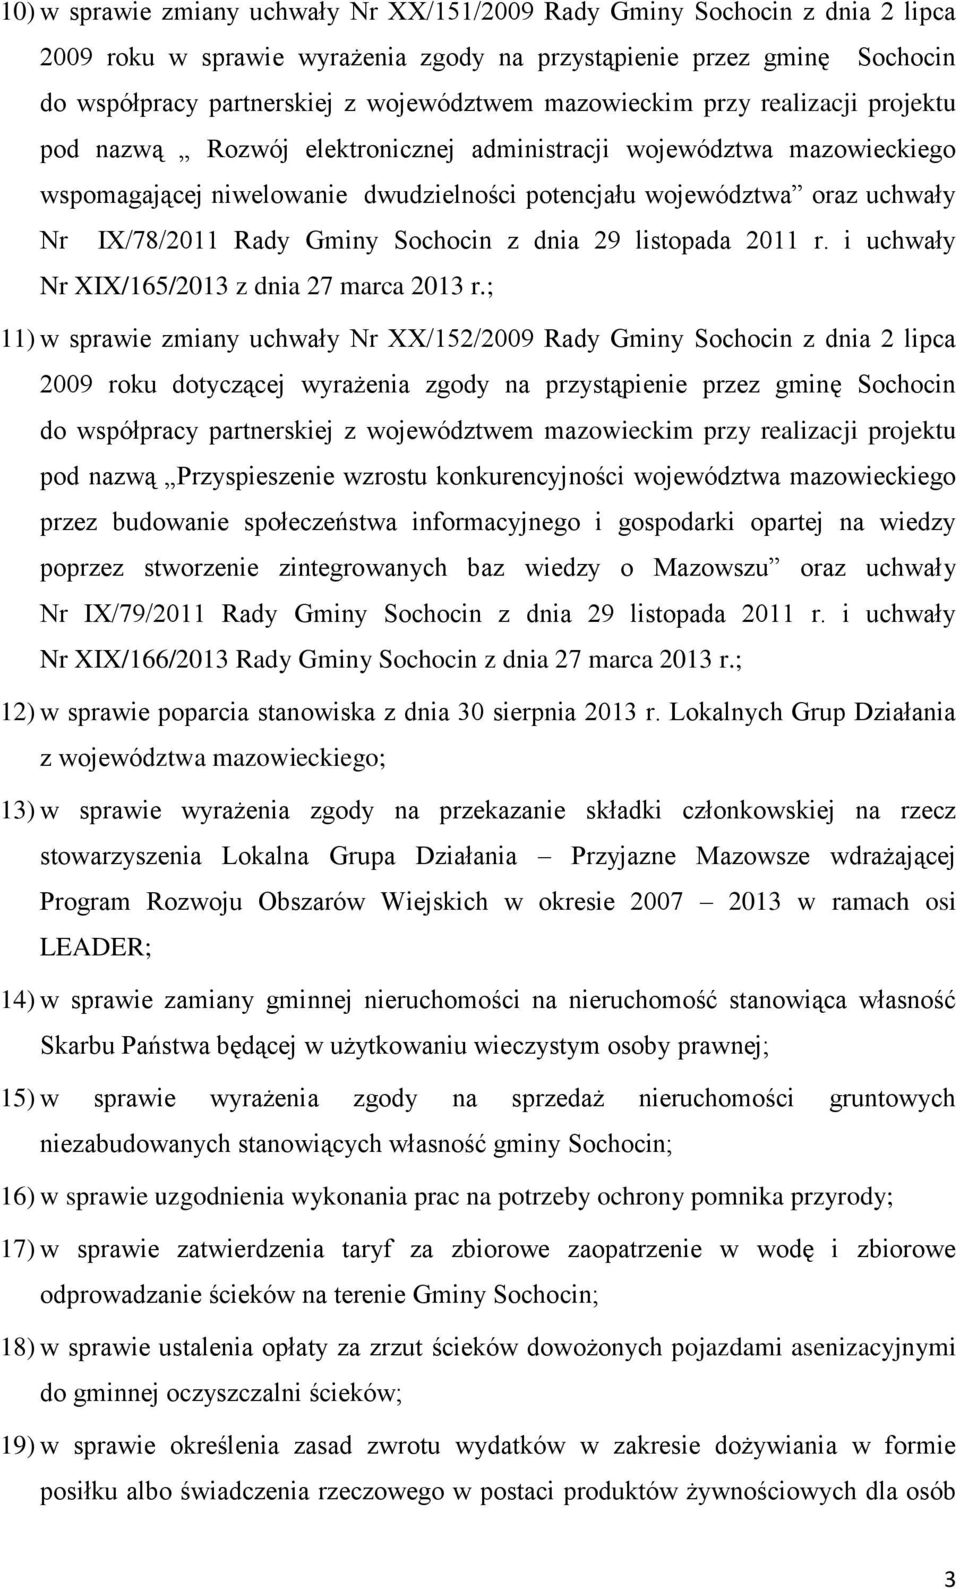 Rady Gminy Sochocin z dnia 29 listopada 2011 r. i uchwały Nr XIX/165/2013 z dnia 27 marca 2013 r.